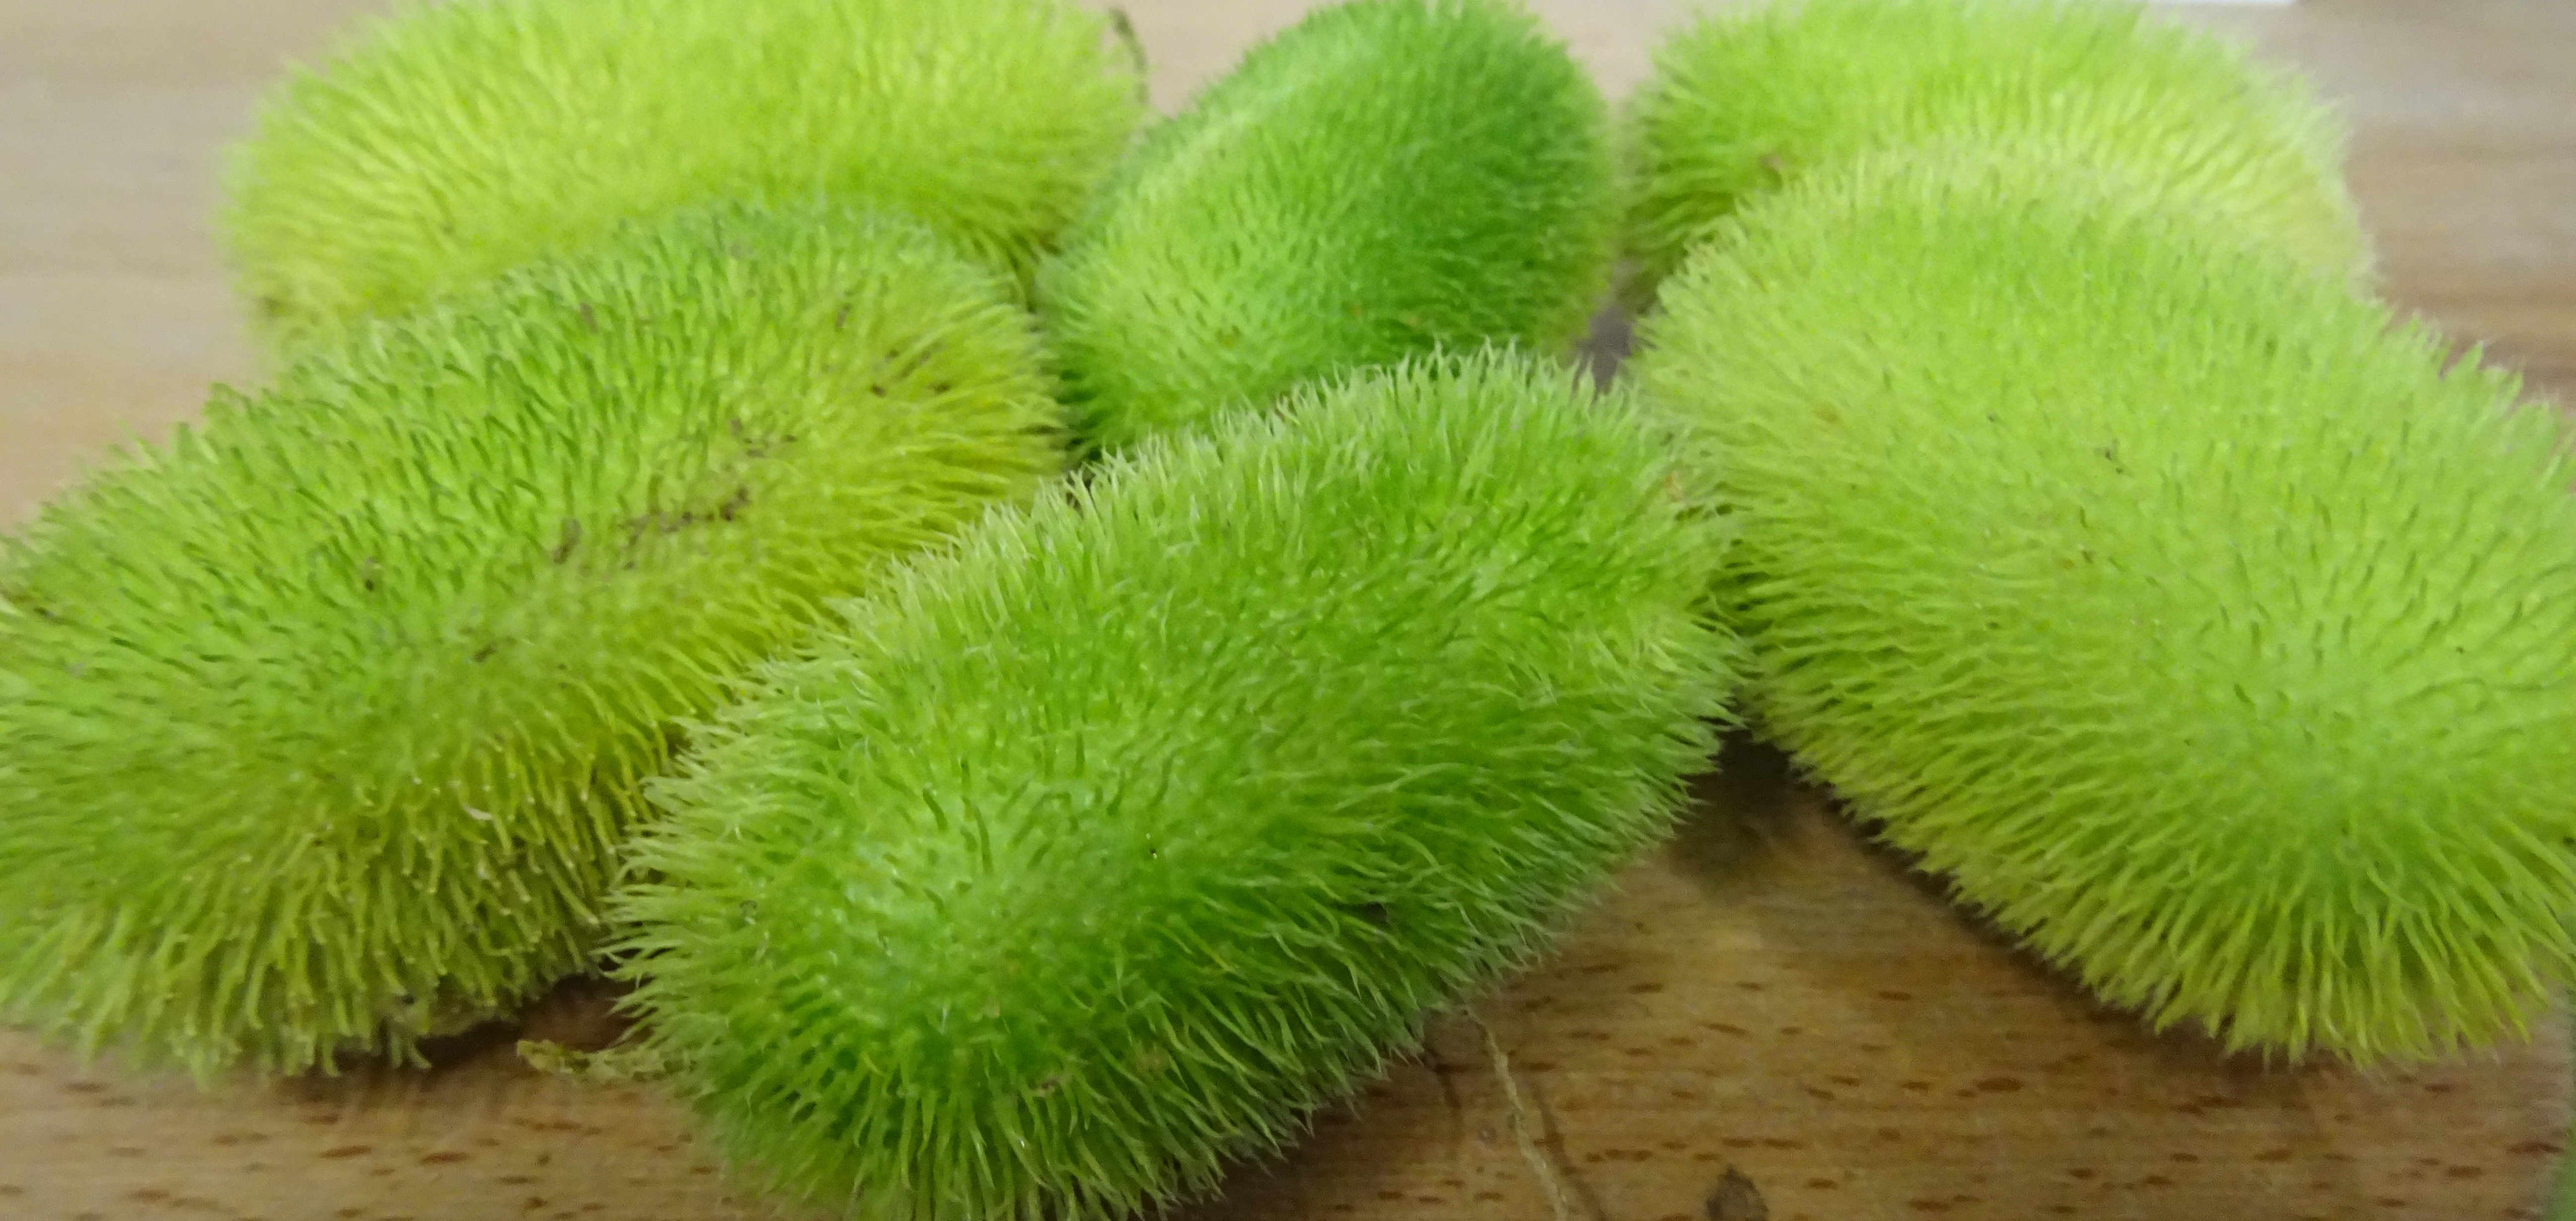  1 Stachelgurken grün  Cucumis mit weichen Stacheln 